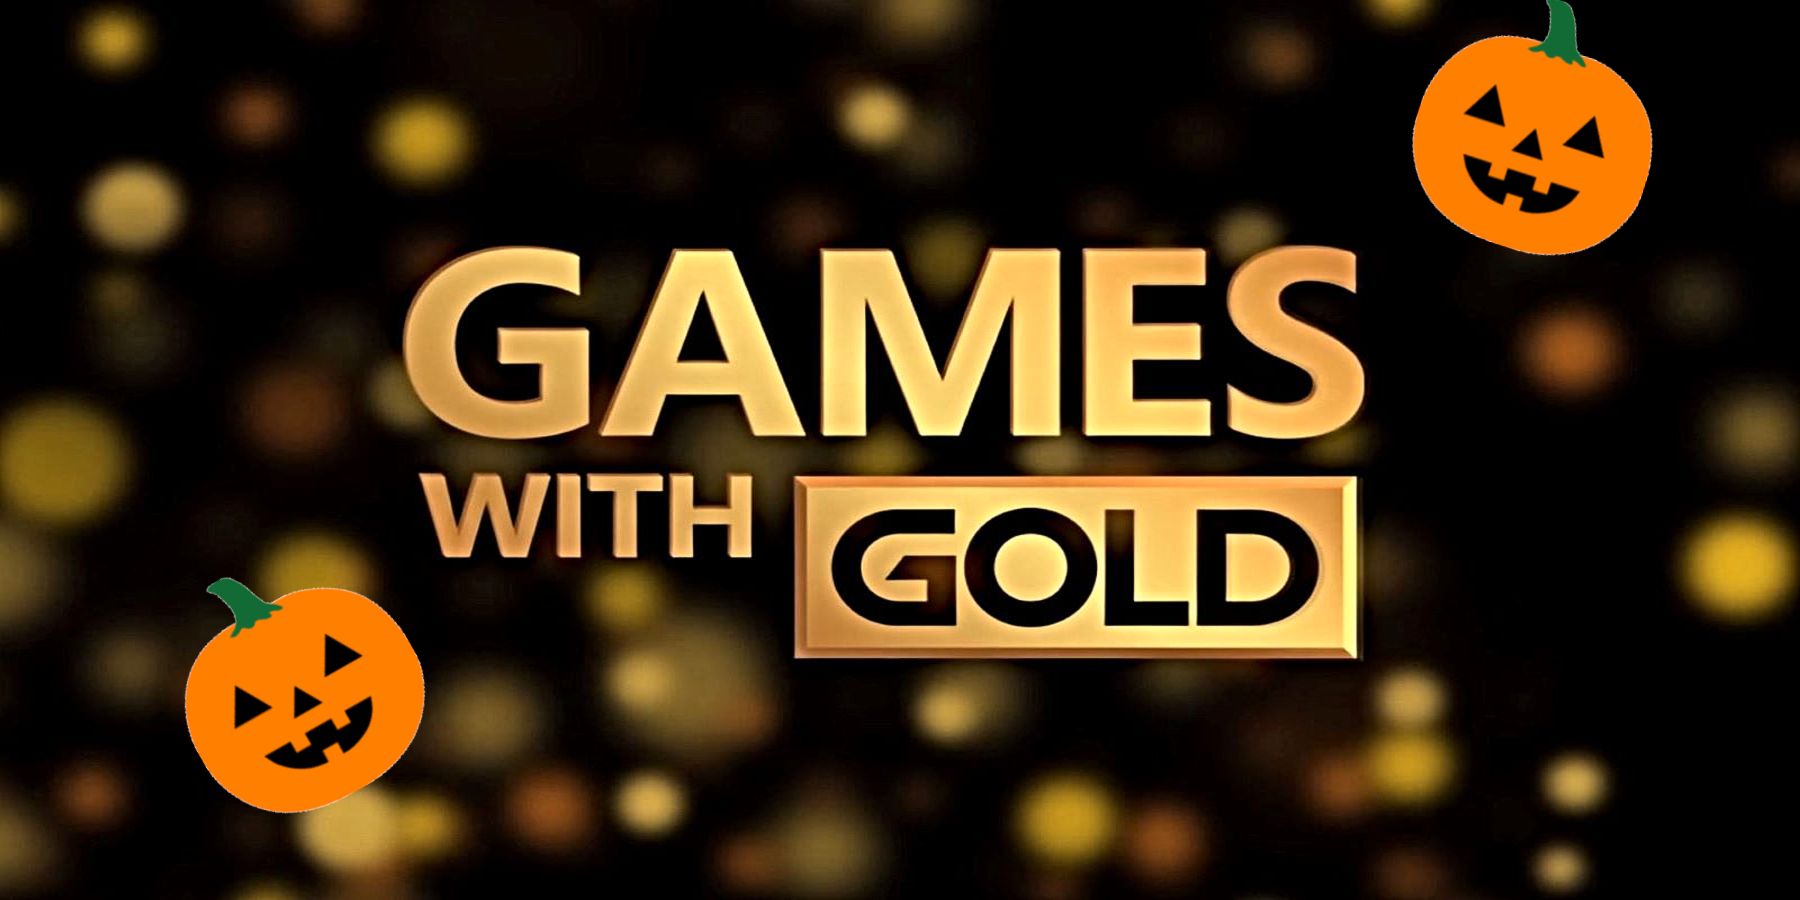 De første to Xbox-spil med guldspil til oktober 2021 er tilgængelige en dag før tid